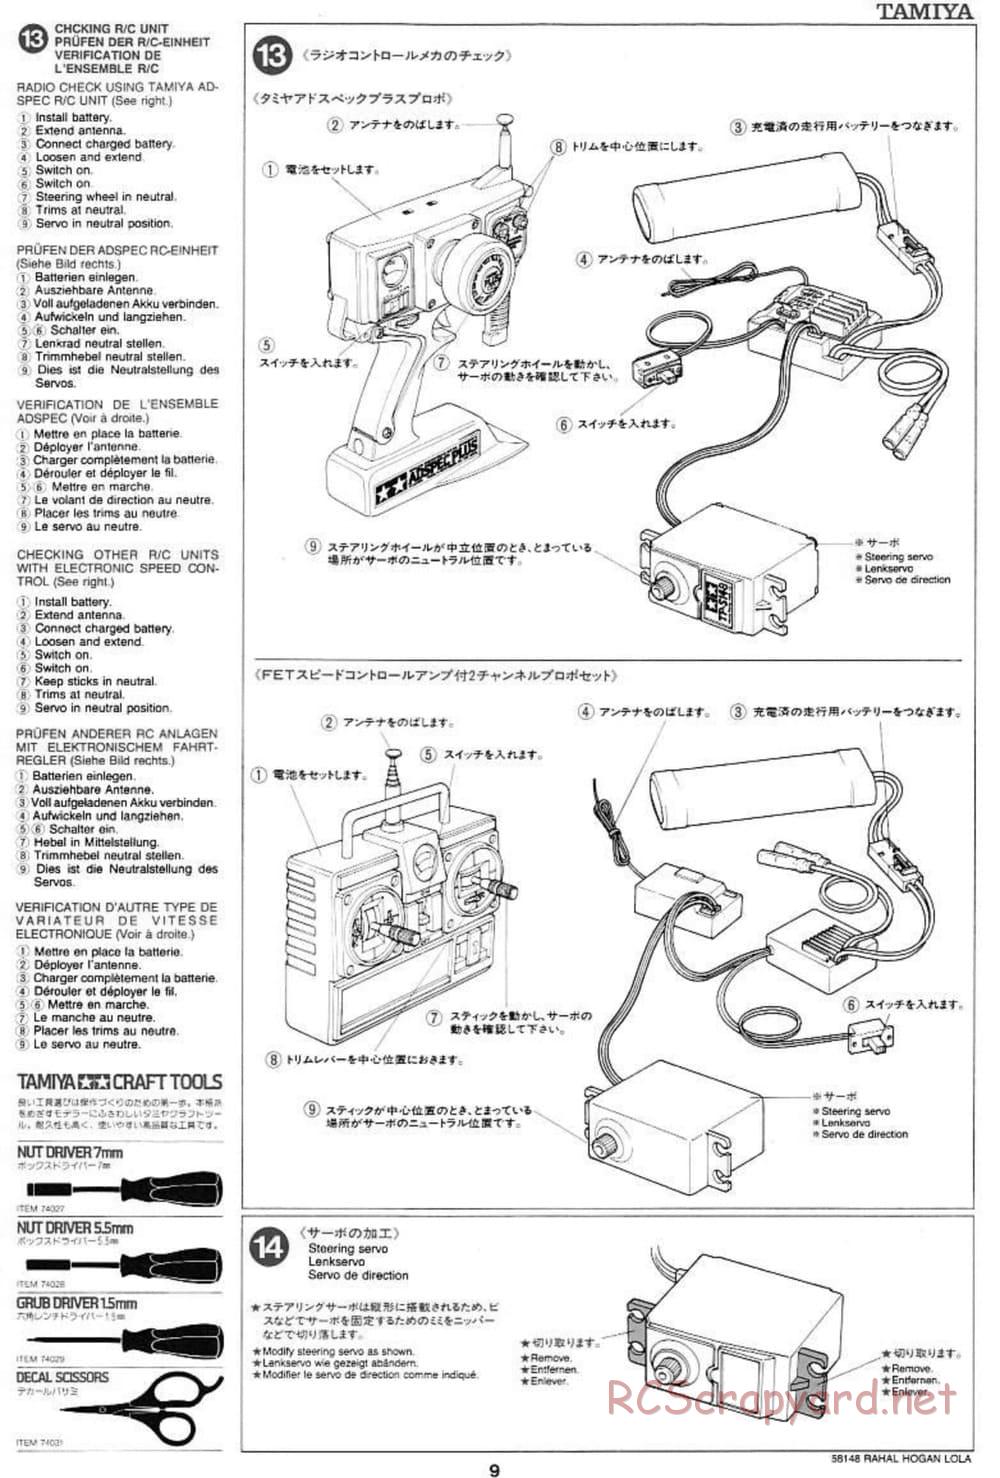 Tamiya - Rahal-Hogan Motorola Lola T94/00 Honda - F103L Chassis - Manual - Page 9